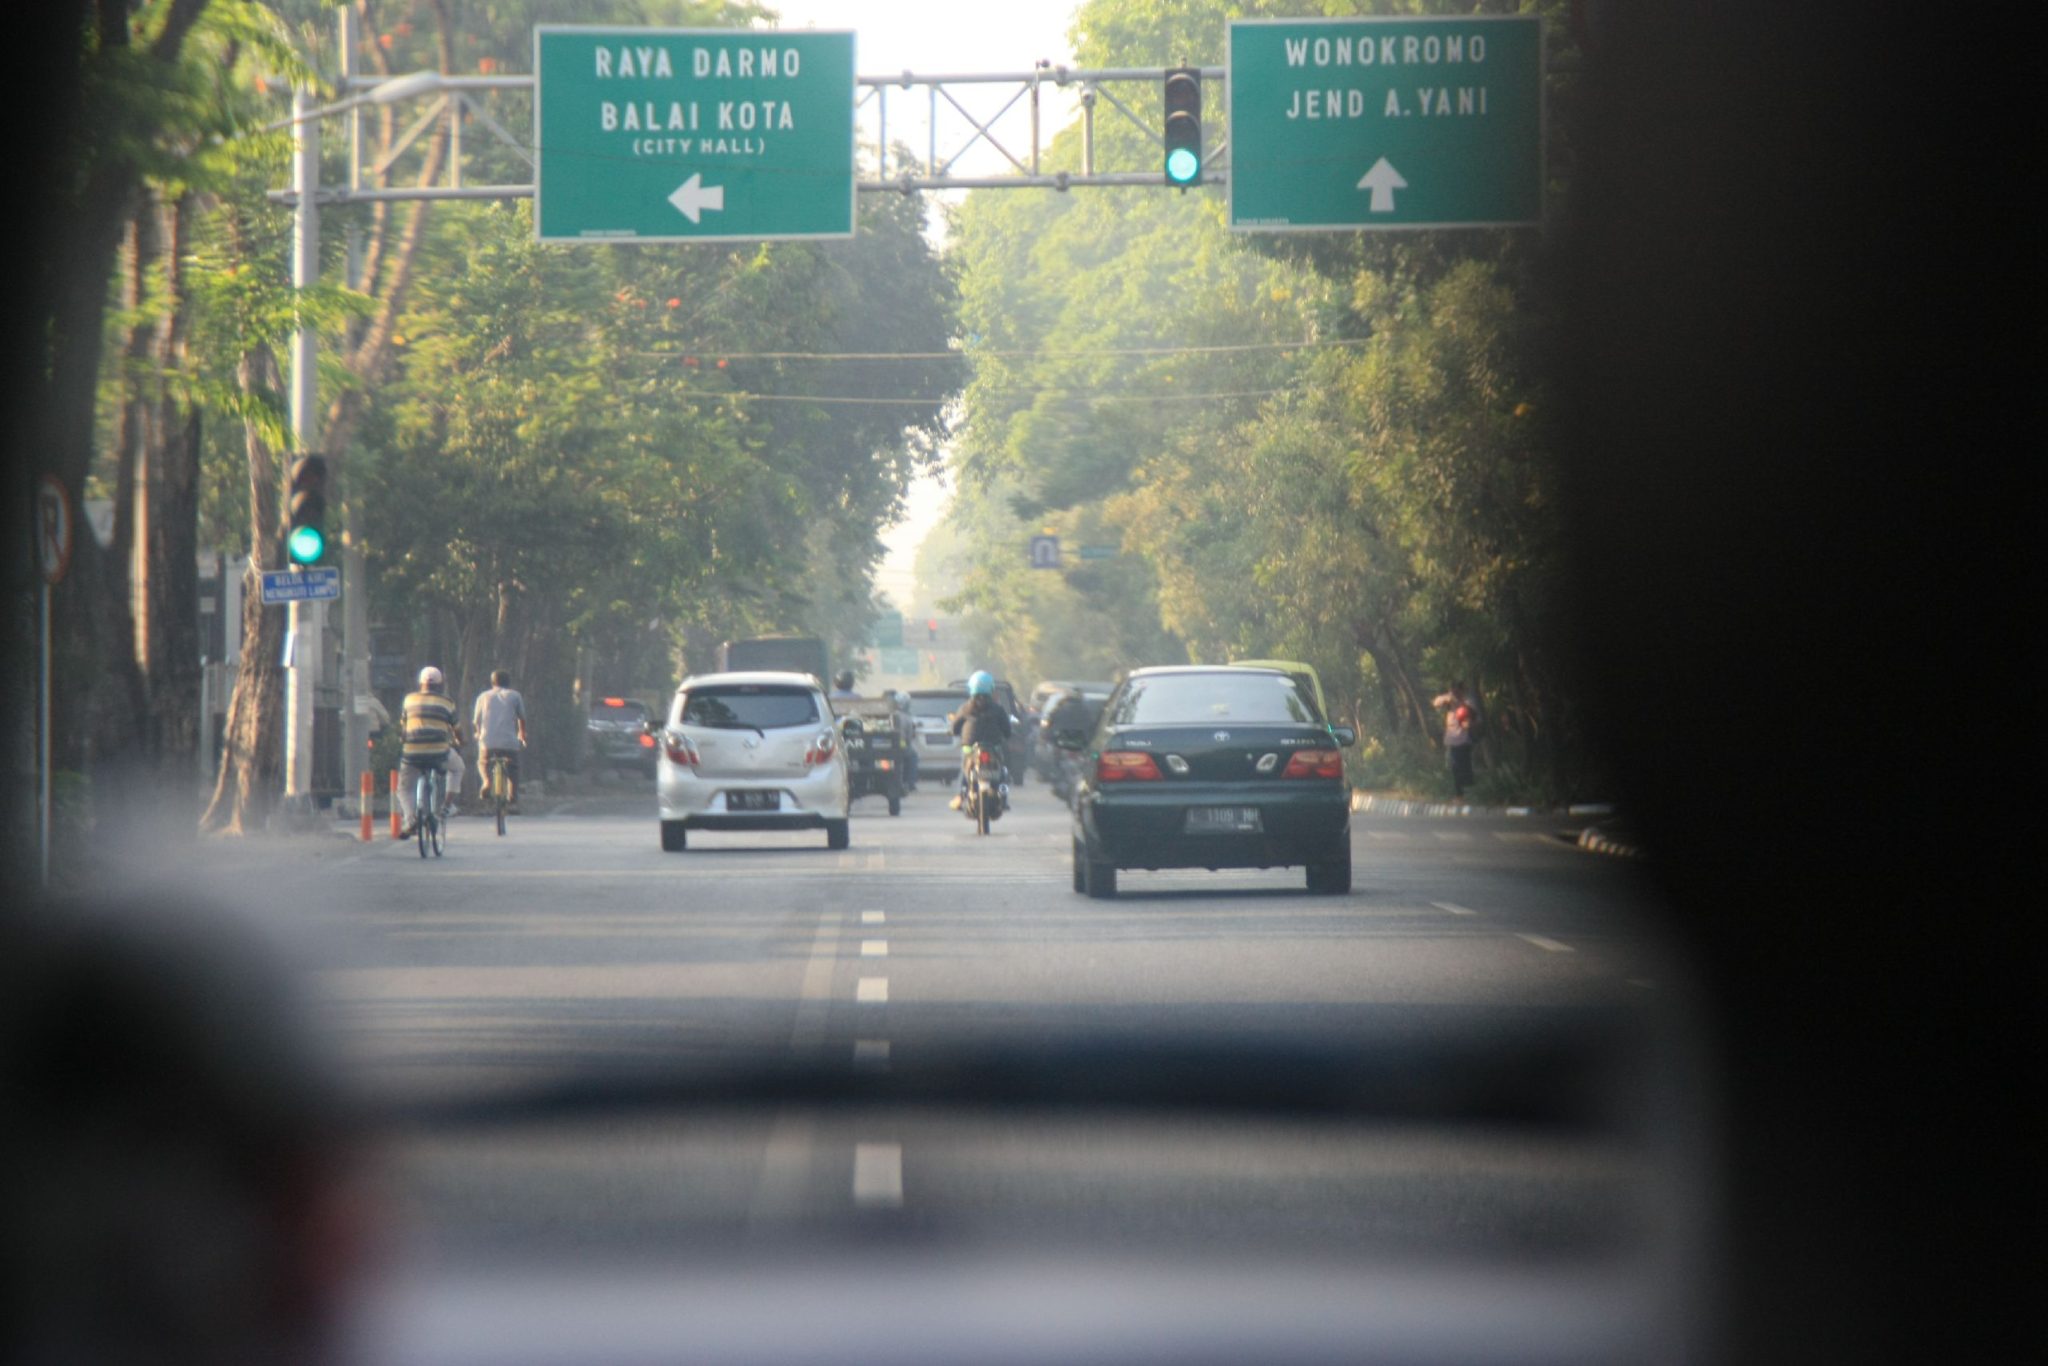 Surabaya z taxíku